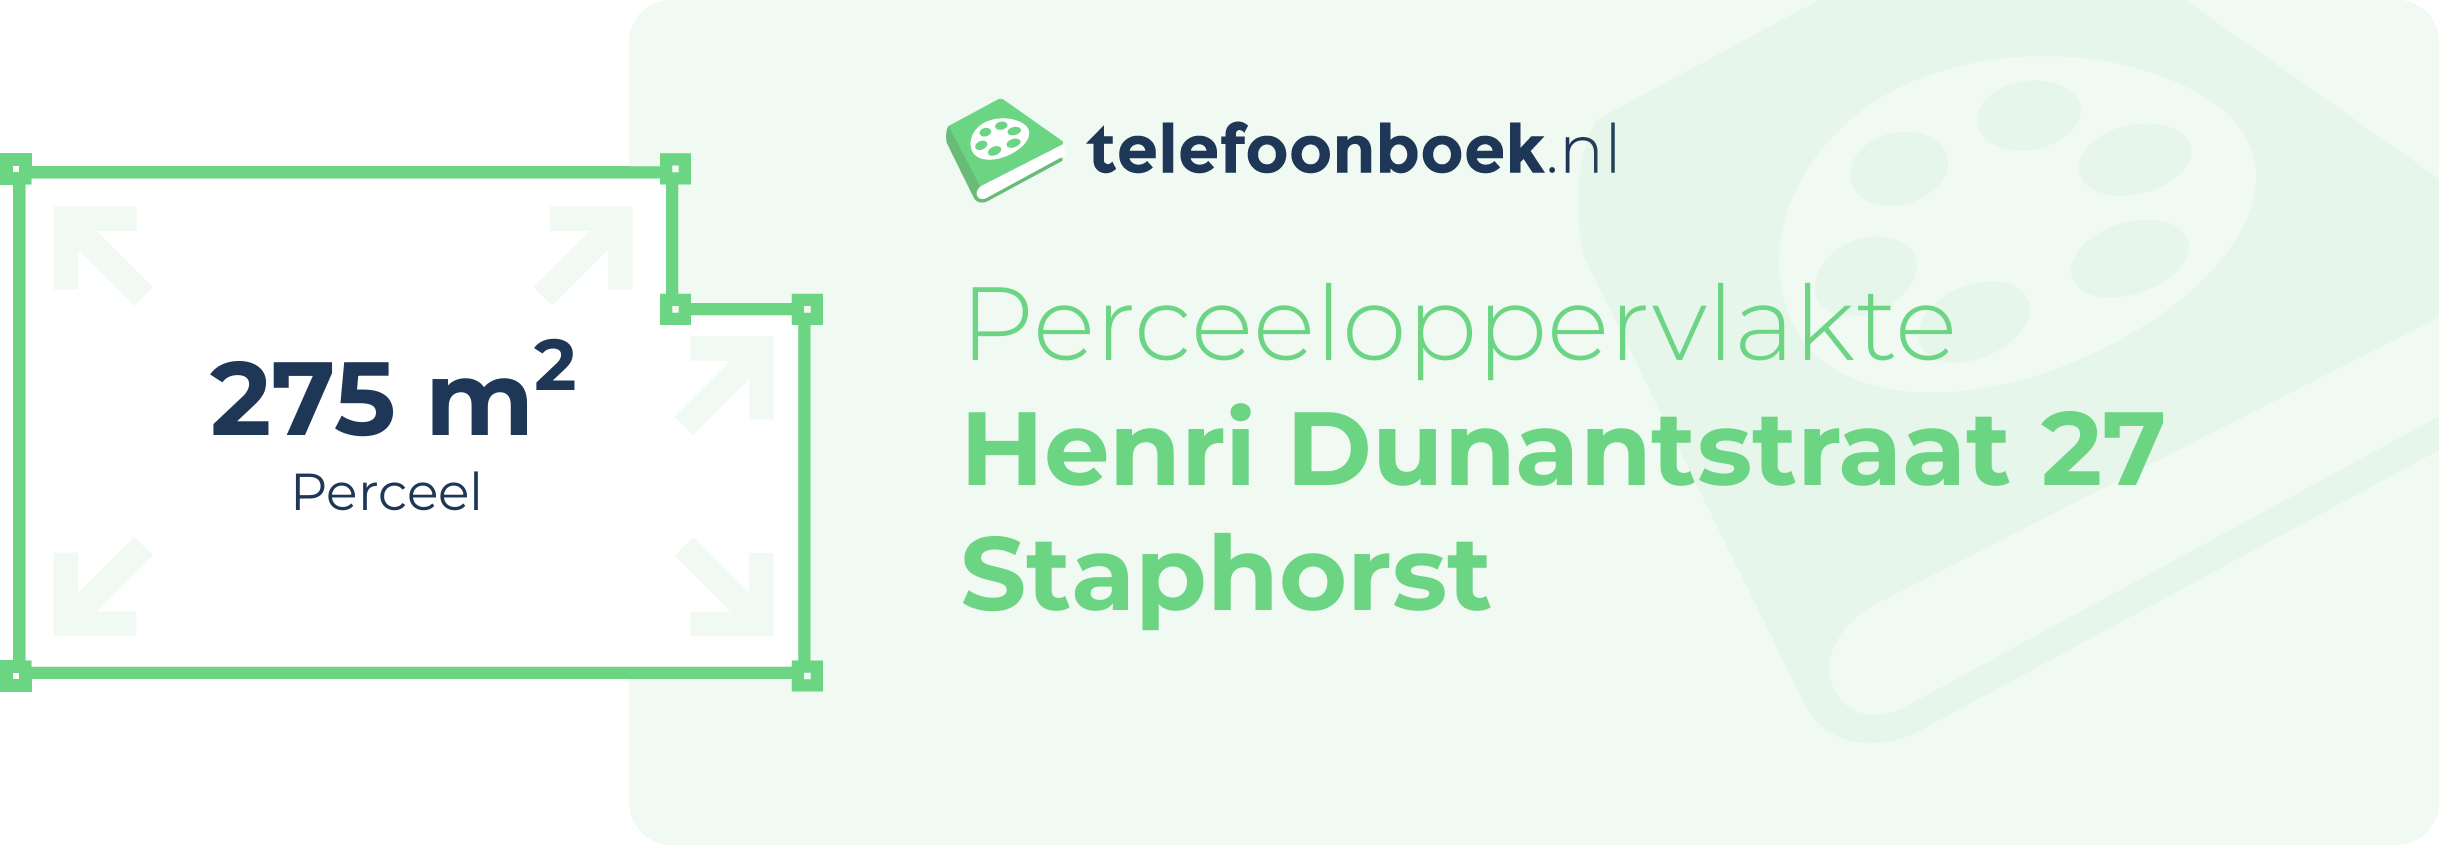 Perceeloppervlakte Henri Dunantstraat 27 Staphorst